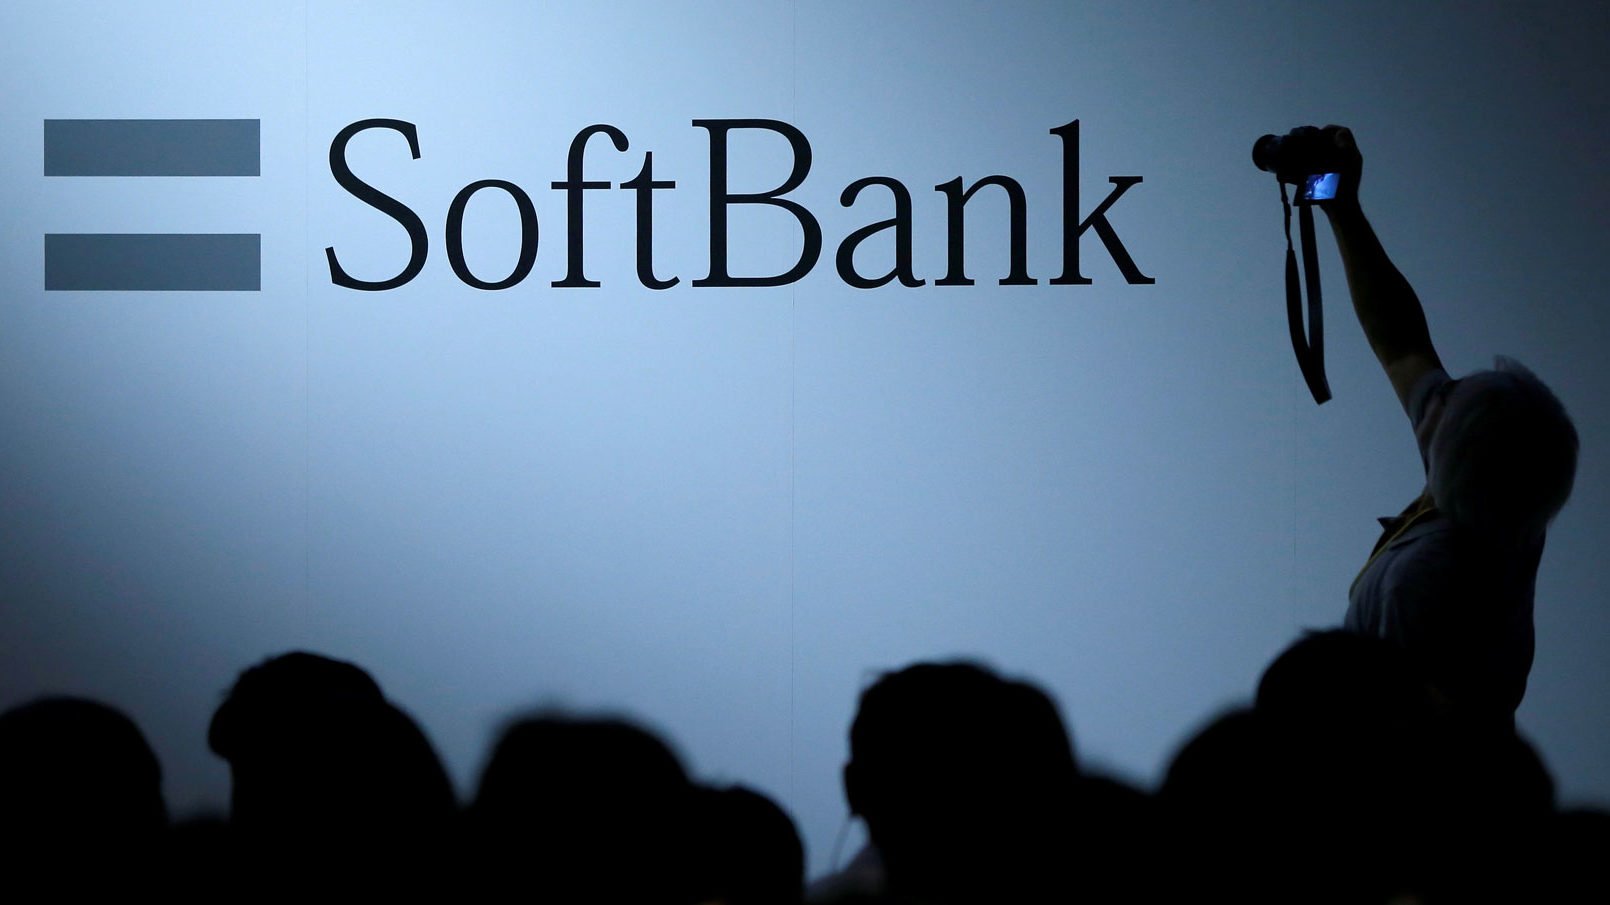 SoftBank ganará 34,000 mdd con el recorte de su participación en Alibaba